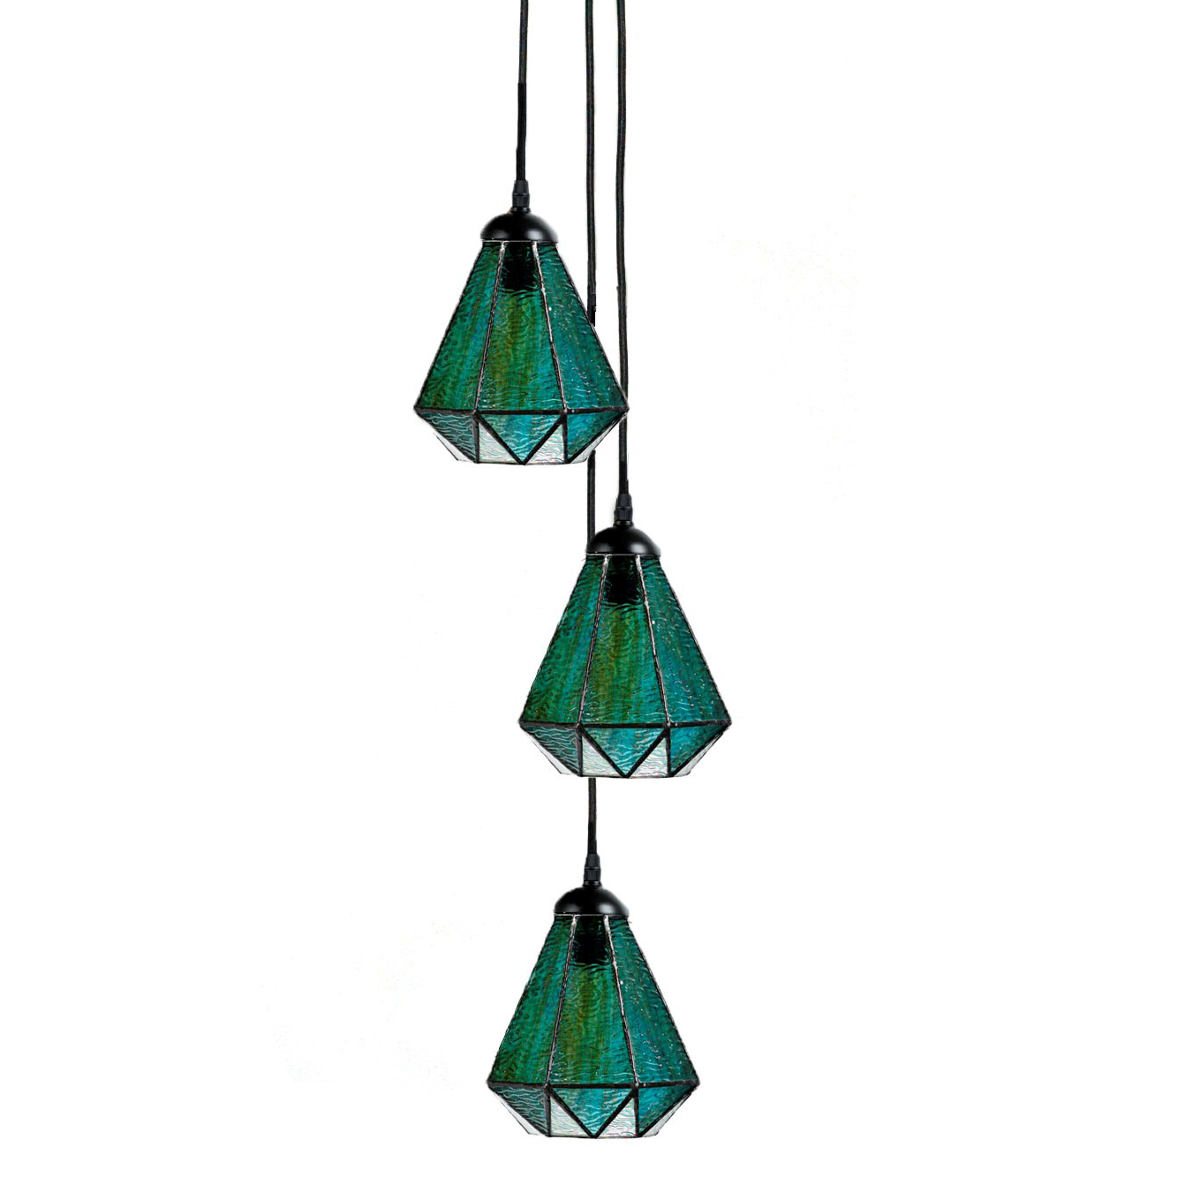 Gruppe mit 2 oder 3 Hängeleuchten mit grünen Tiffanyglas-Schirmen: Modell 2: Gruppe aus drei Leuchten